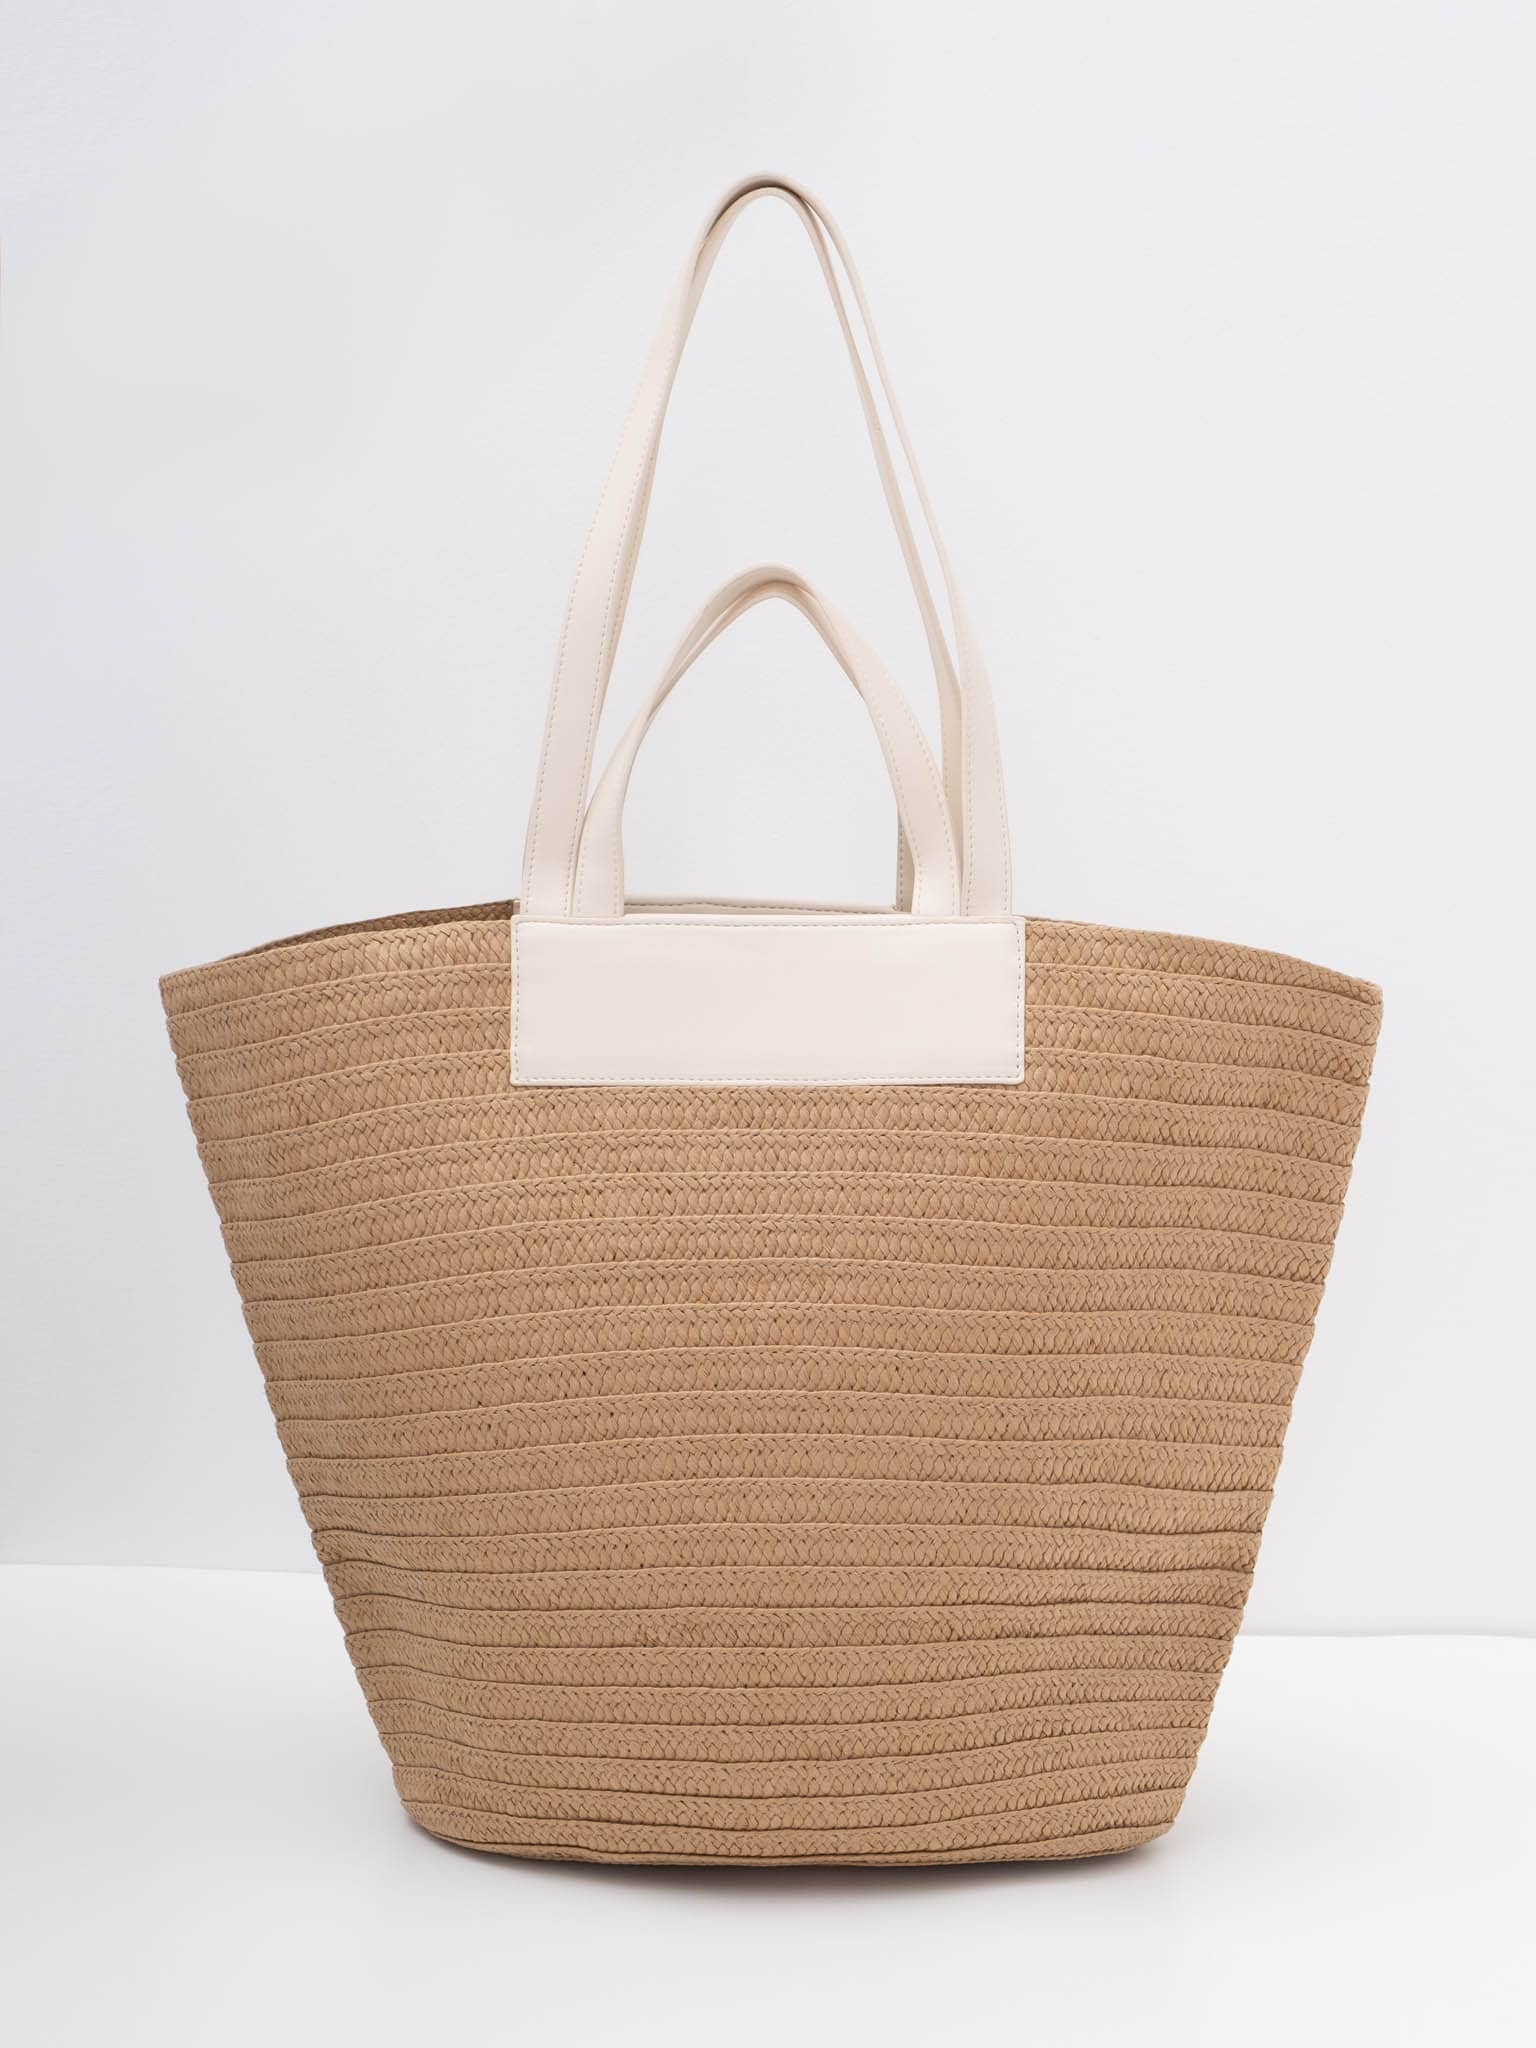 Плетеная сумка мягкой формы с вставками из экокожи